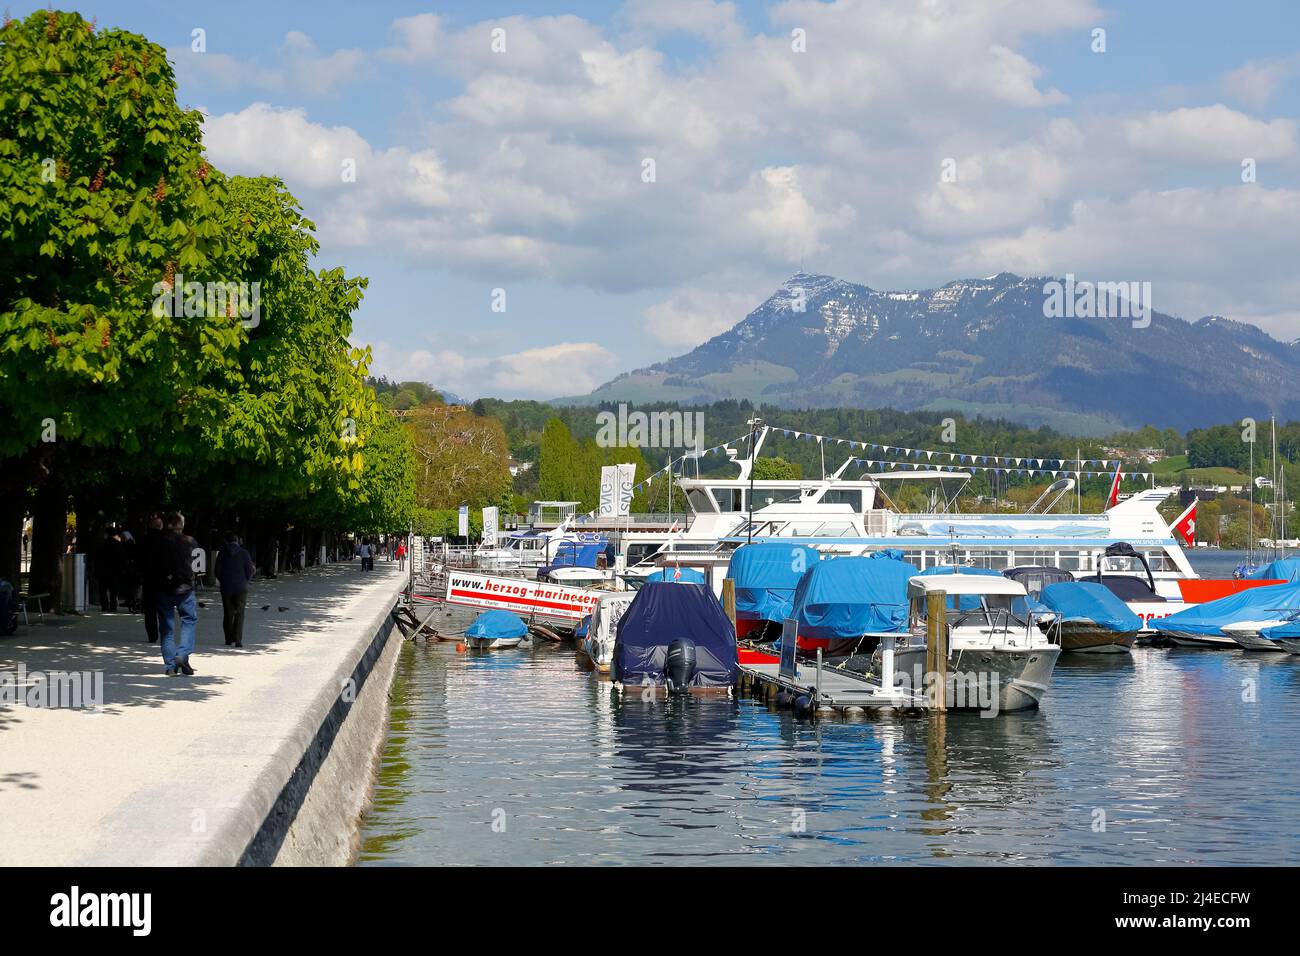 Lucerna, Suiza - 04 de mayo de 2016: Barcos en el puerto deportivo del lago Lucerna. El cercano paseo marítimo a lo largo del lago, que es visitado a menudo por los turistas, fuera Foto de stock